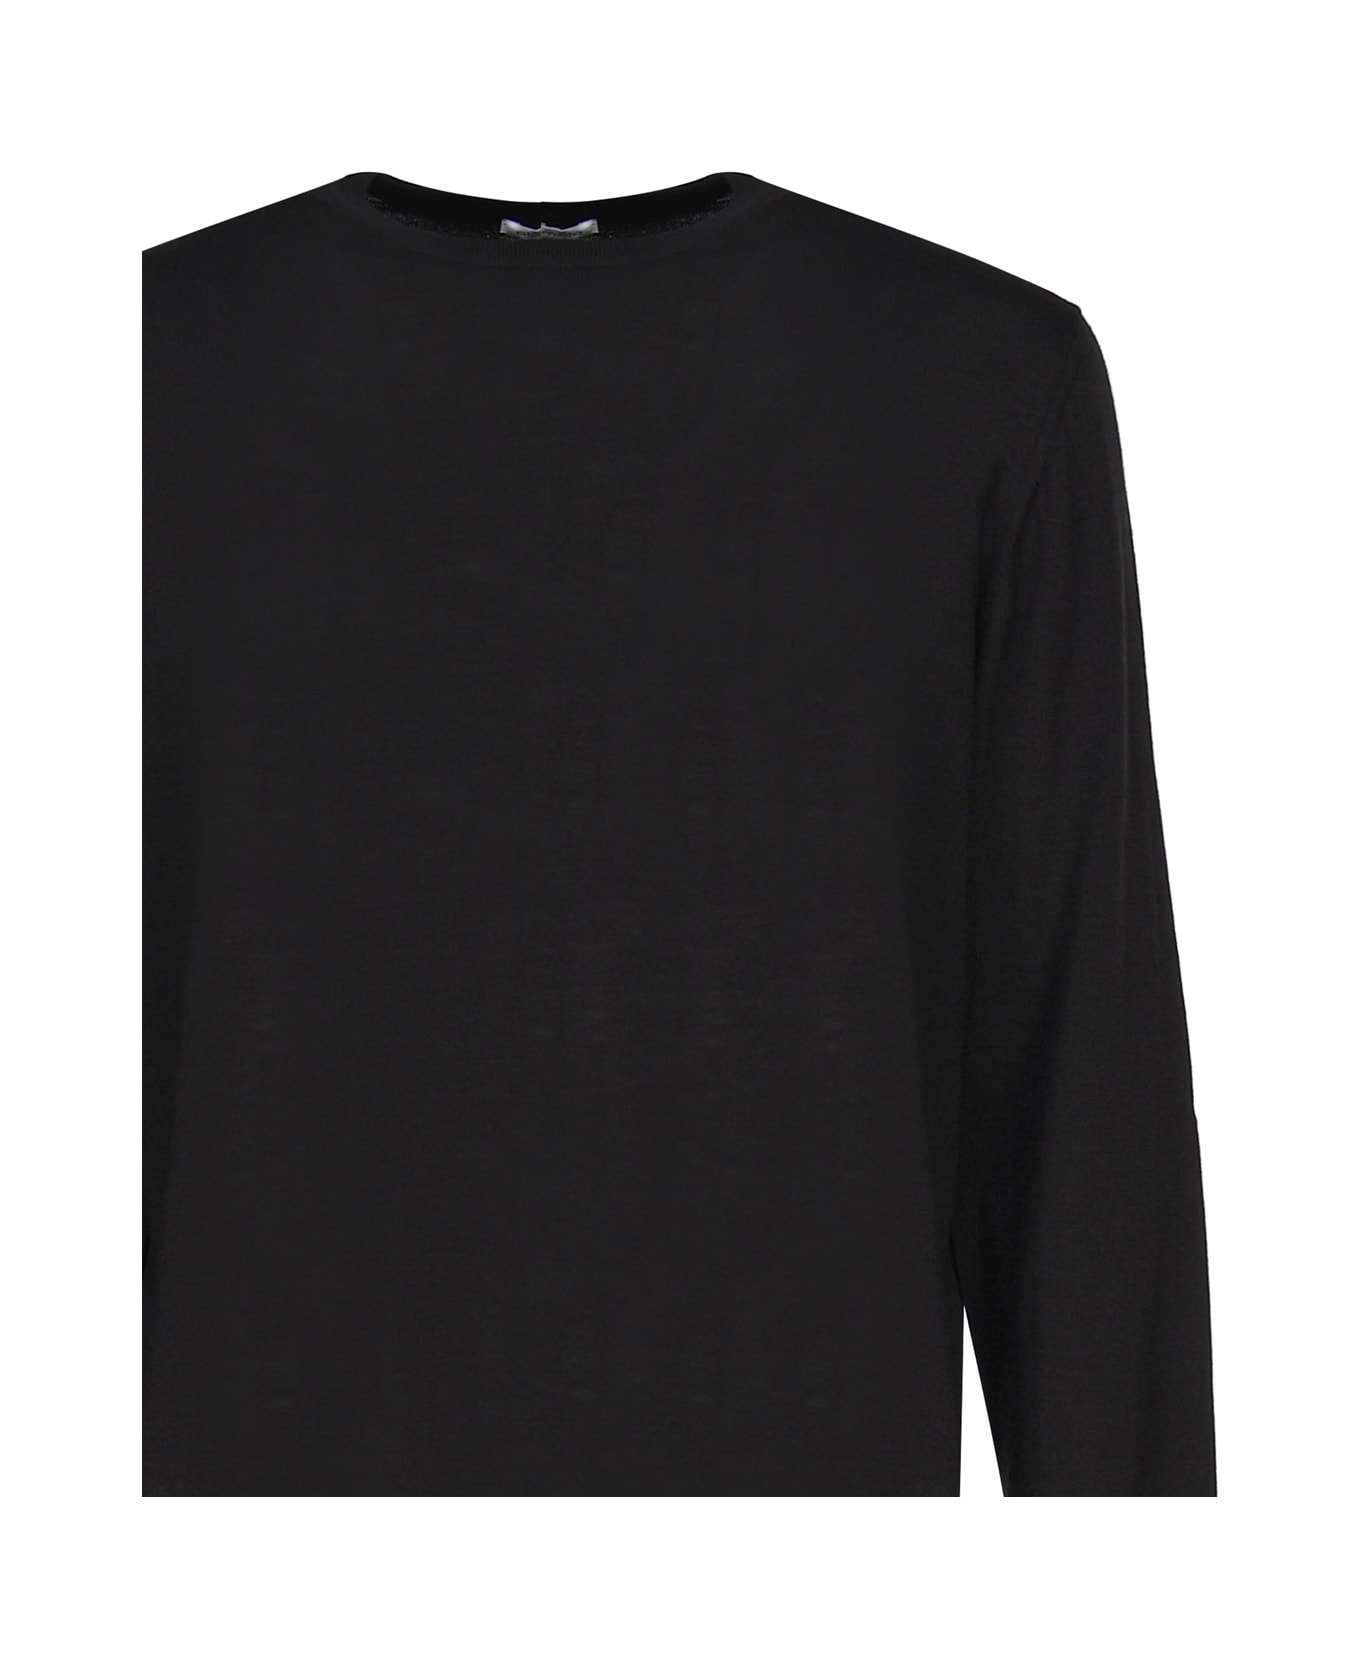 Malo Cashmere And Silk Crew Neck Sweater - Black